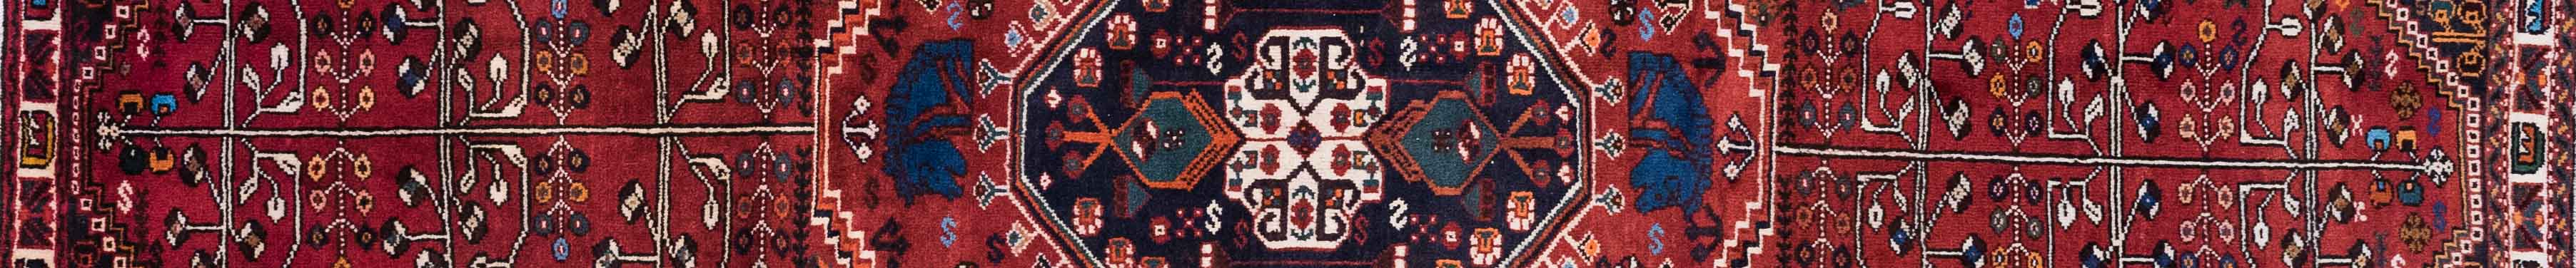 Shiraz Persian Carpet Rug N1Carpet Canada Montreal Tapis Persan 1700